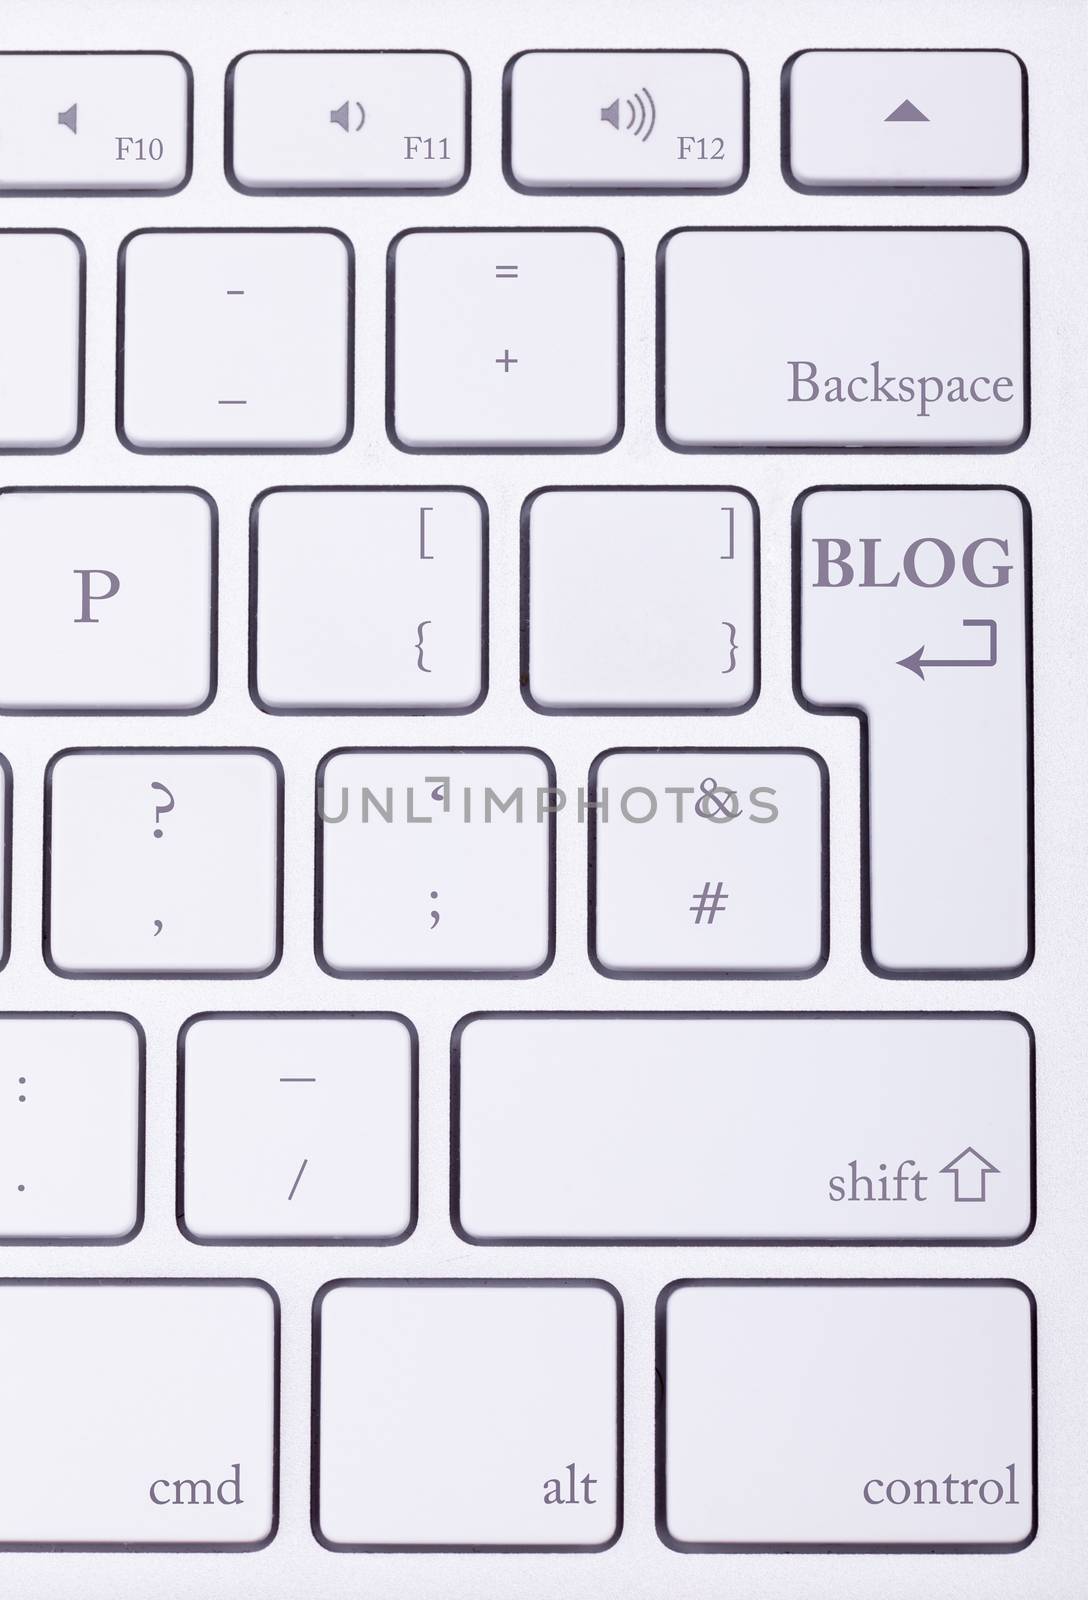 Blog word written on standard keyboard by DCStudio